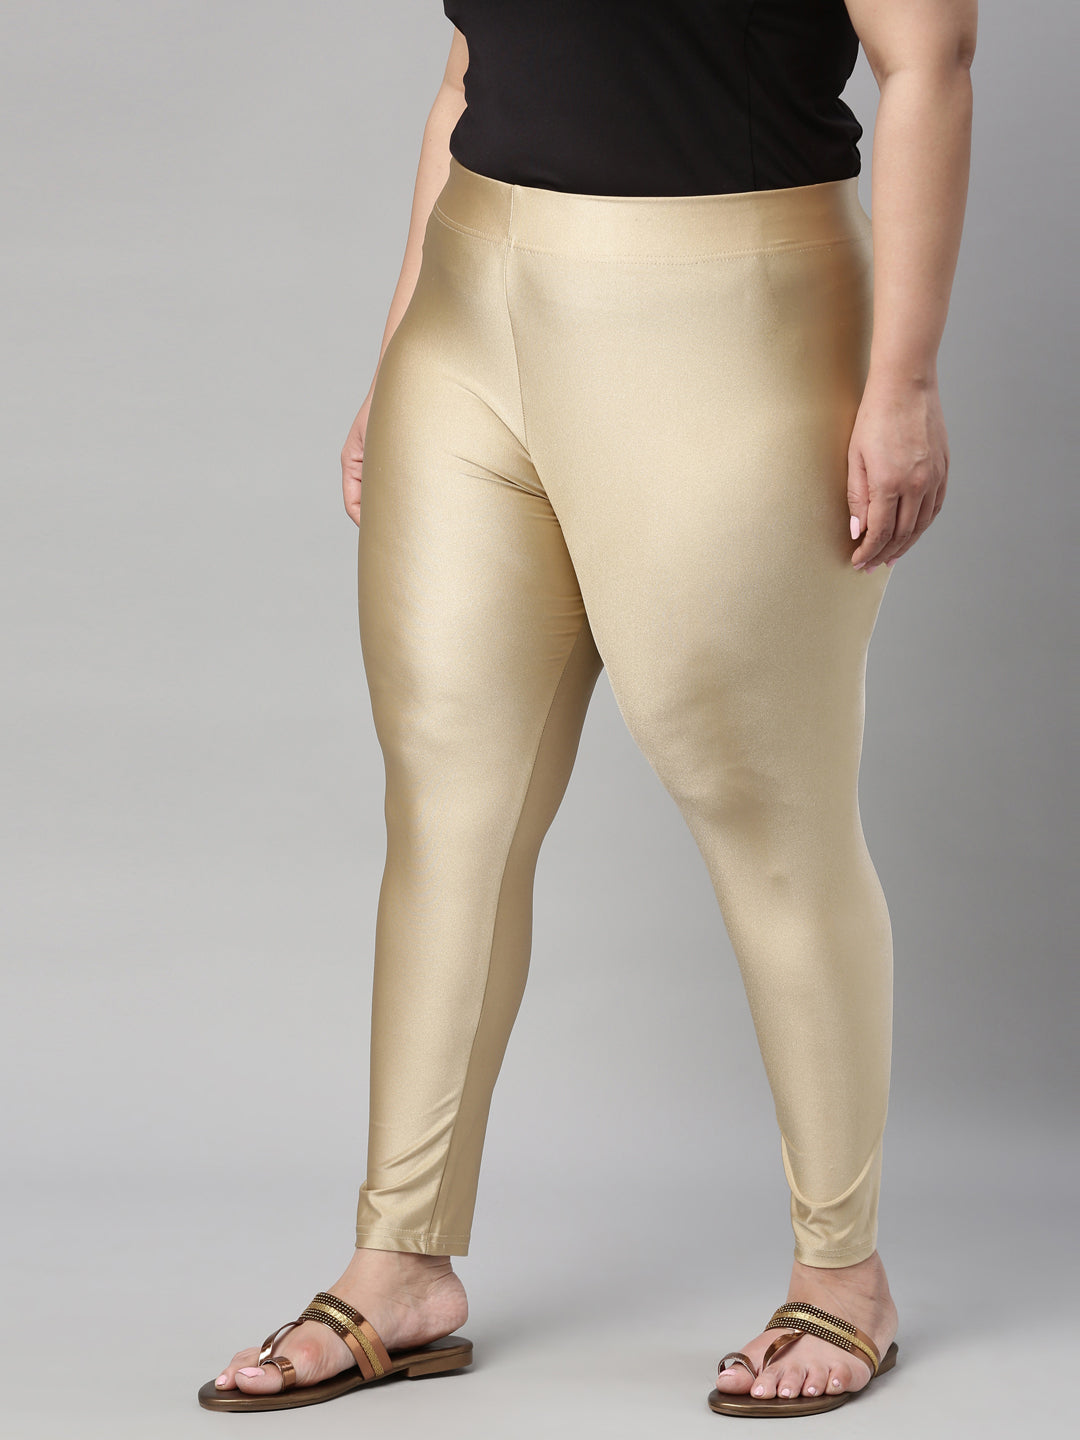 TNQ Women's Shimmer Legging (Golden, PLUS SIZE, XXL)